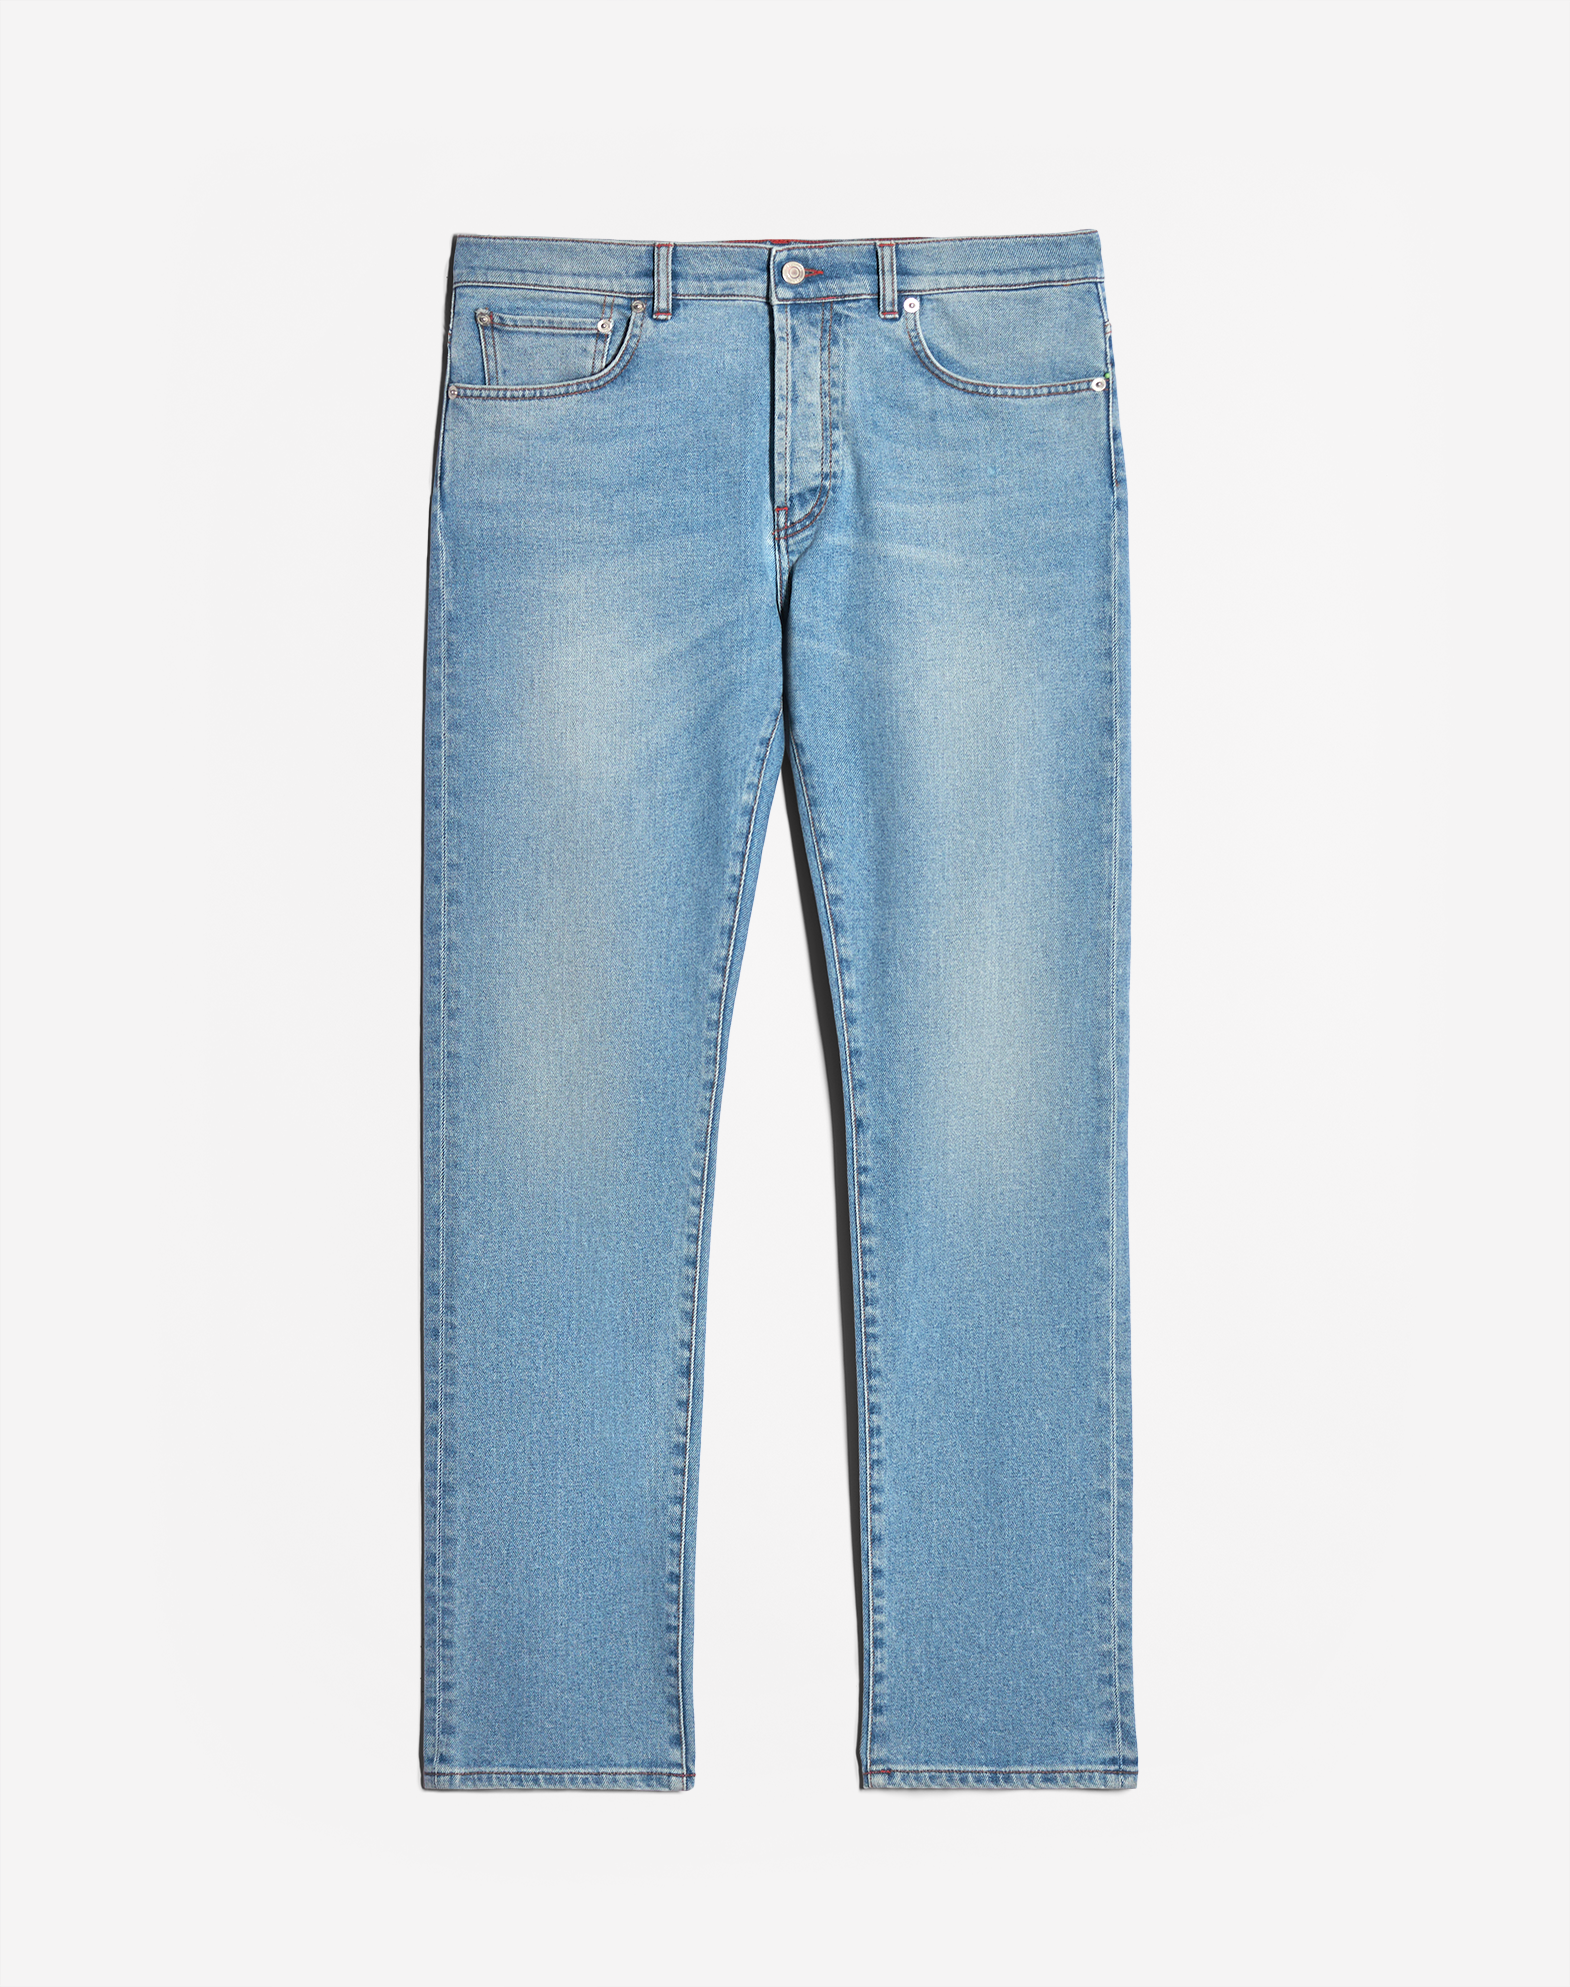 Dunhill Men's Jeans